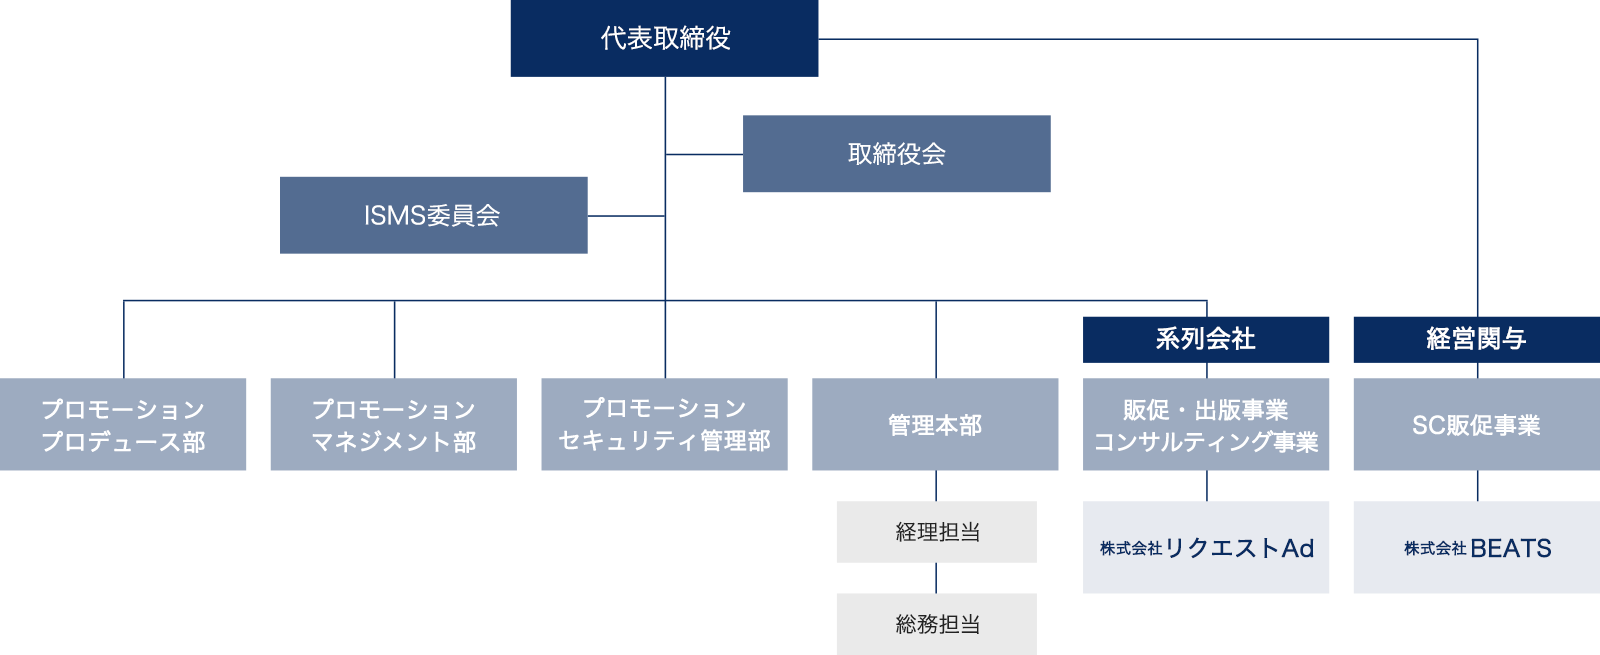 株式会社リクエストプロの組織図